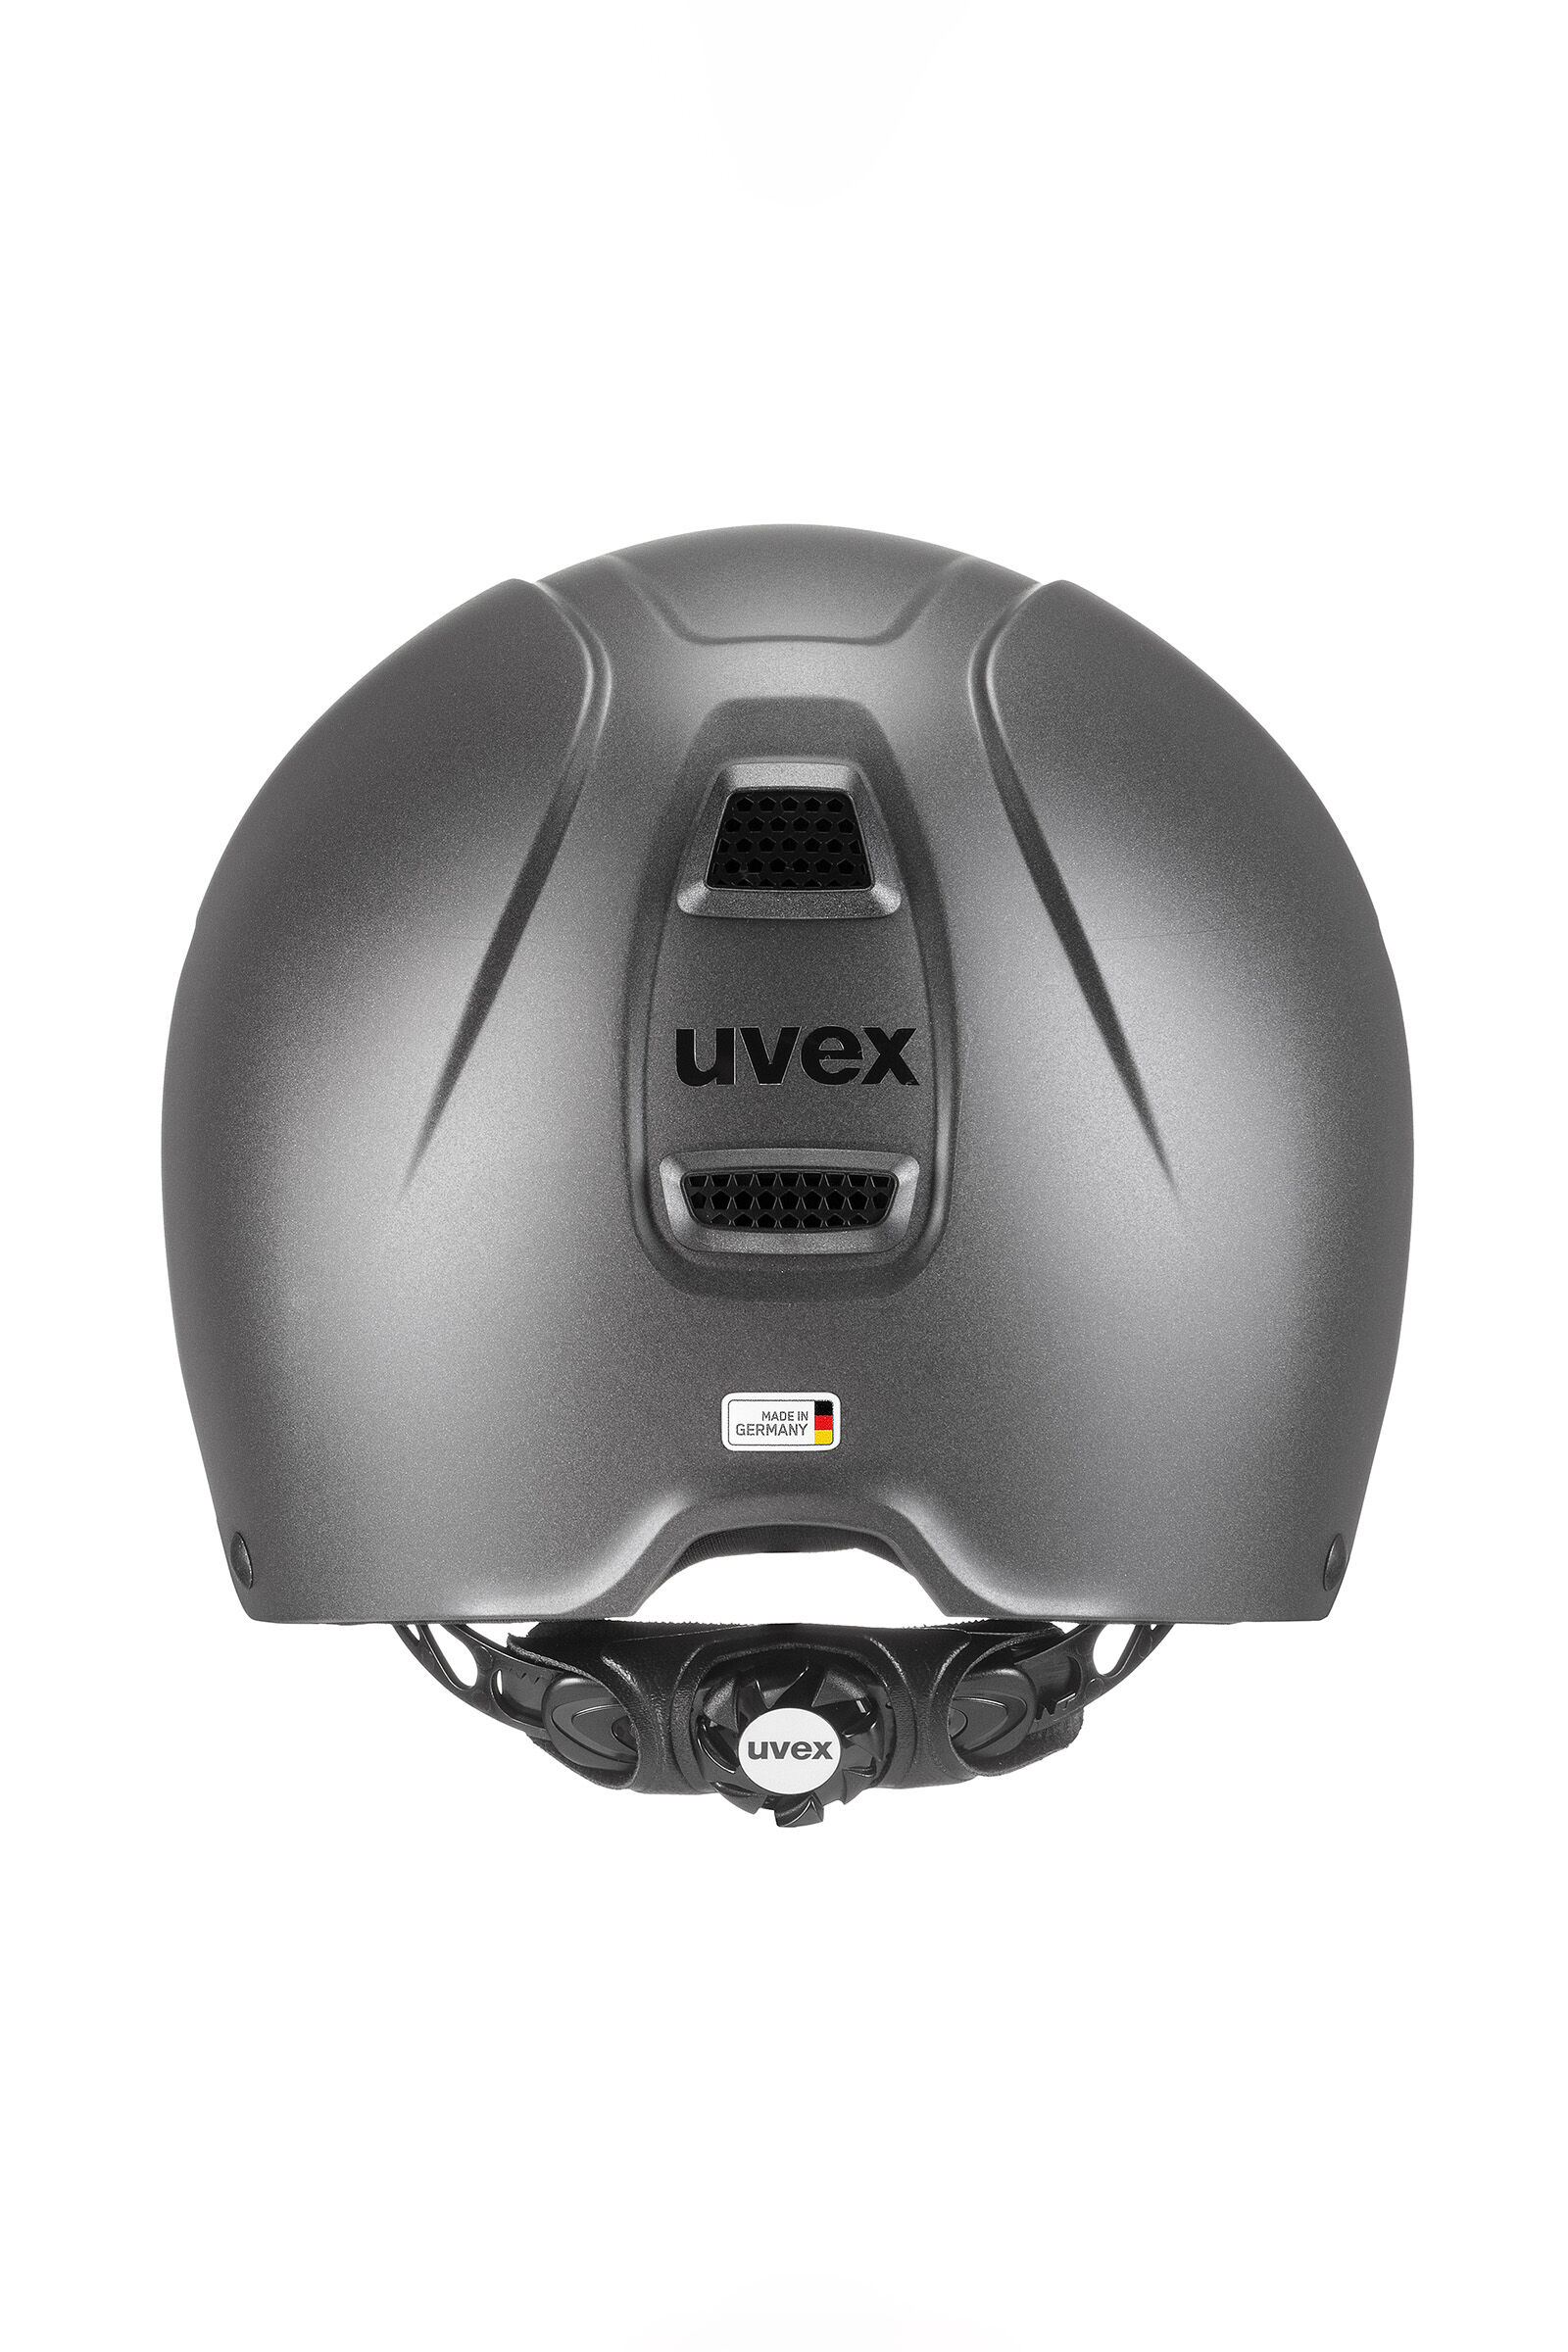 uvex perfexxion II Riding Helmet